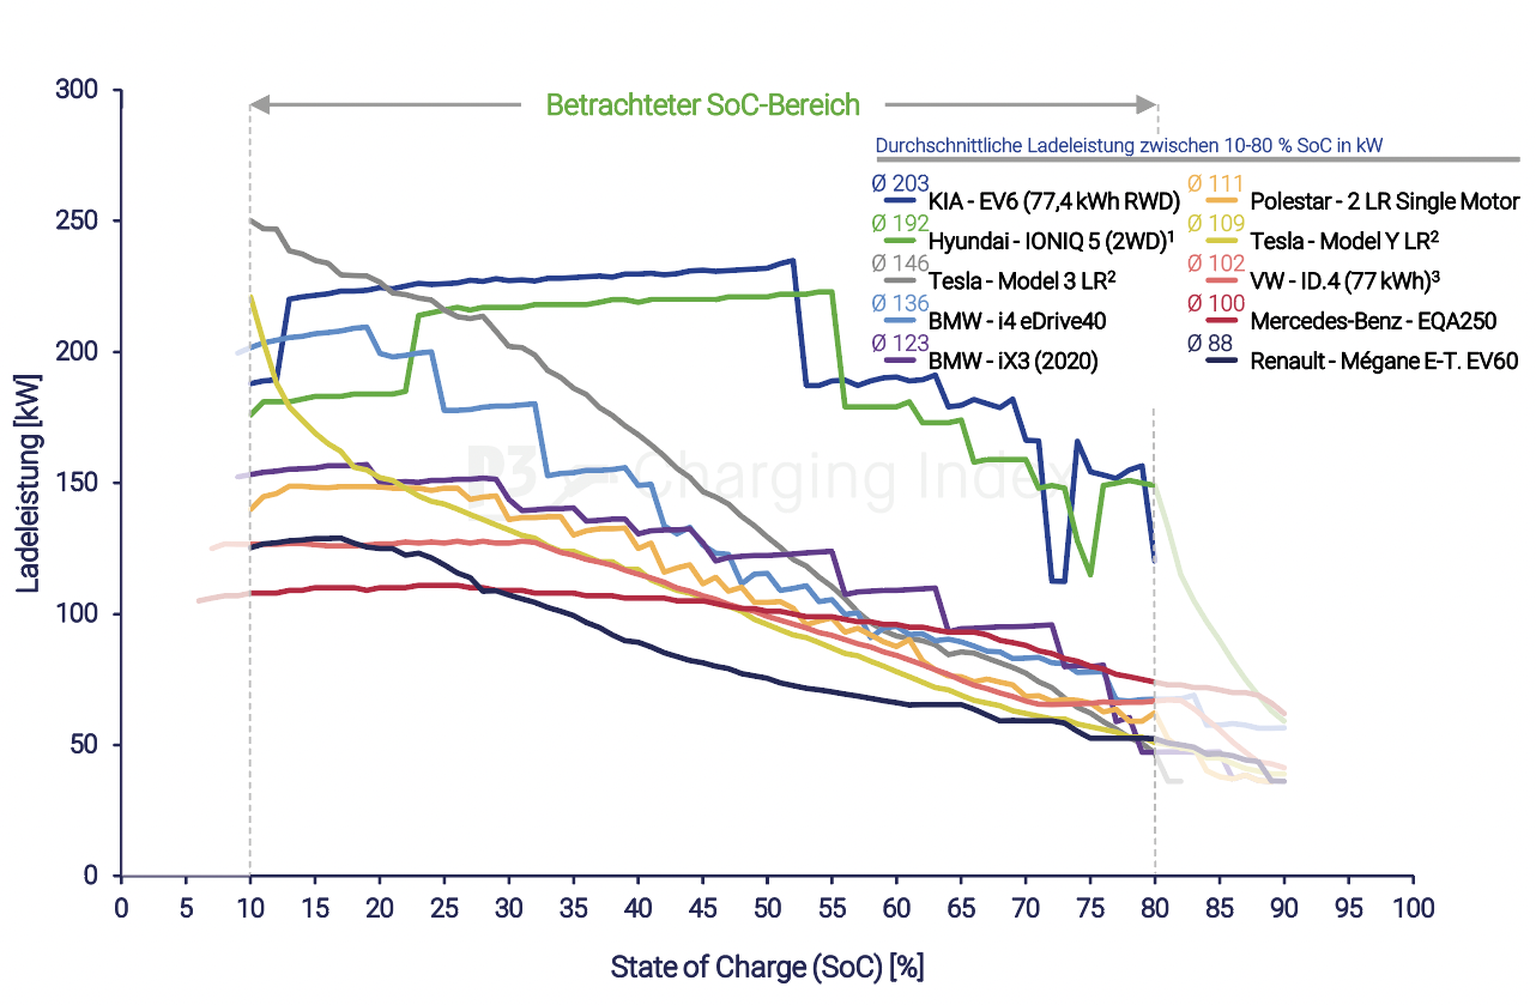 Kia EV6 (dunkelblau) und Hyundai Ioniq 5 (grün) laden bis zu einem Akkustand von ca. 55 % sehr schnell, bei allen anderen fällt die Kurve schneller ab, was eine geringere durchschnittliche Ladeleistun ...